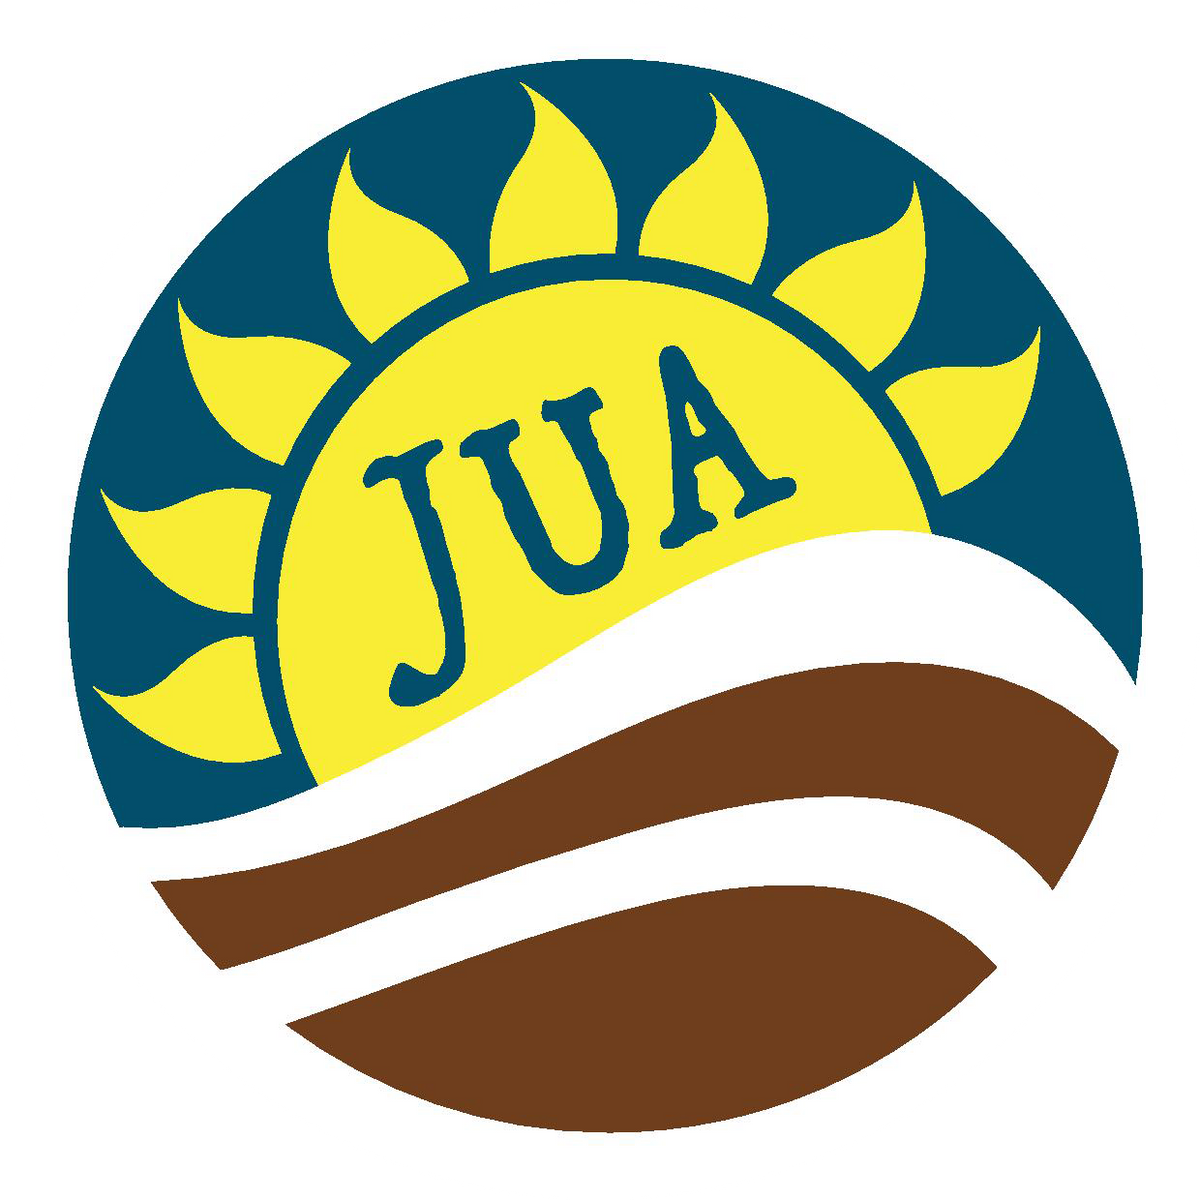 (c) Jua-design.com